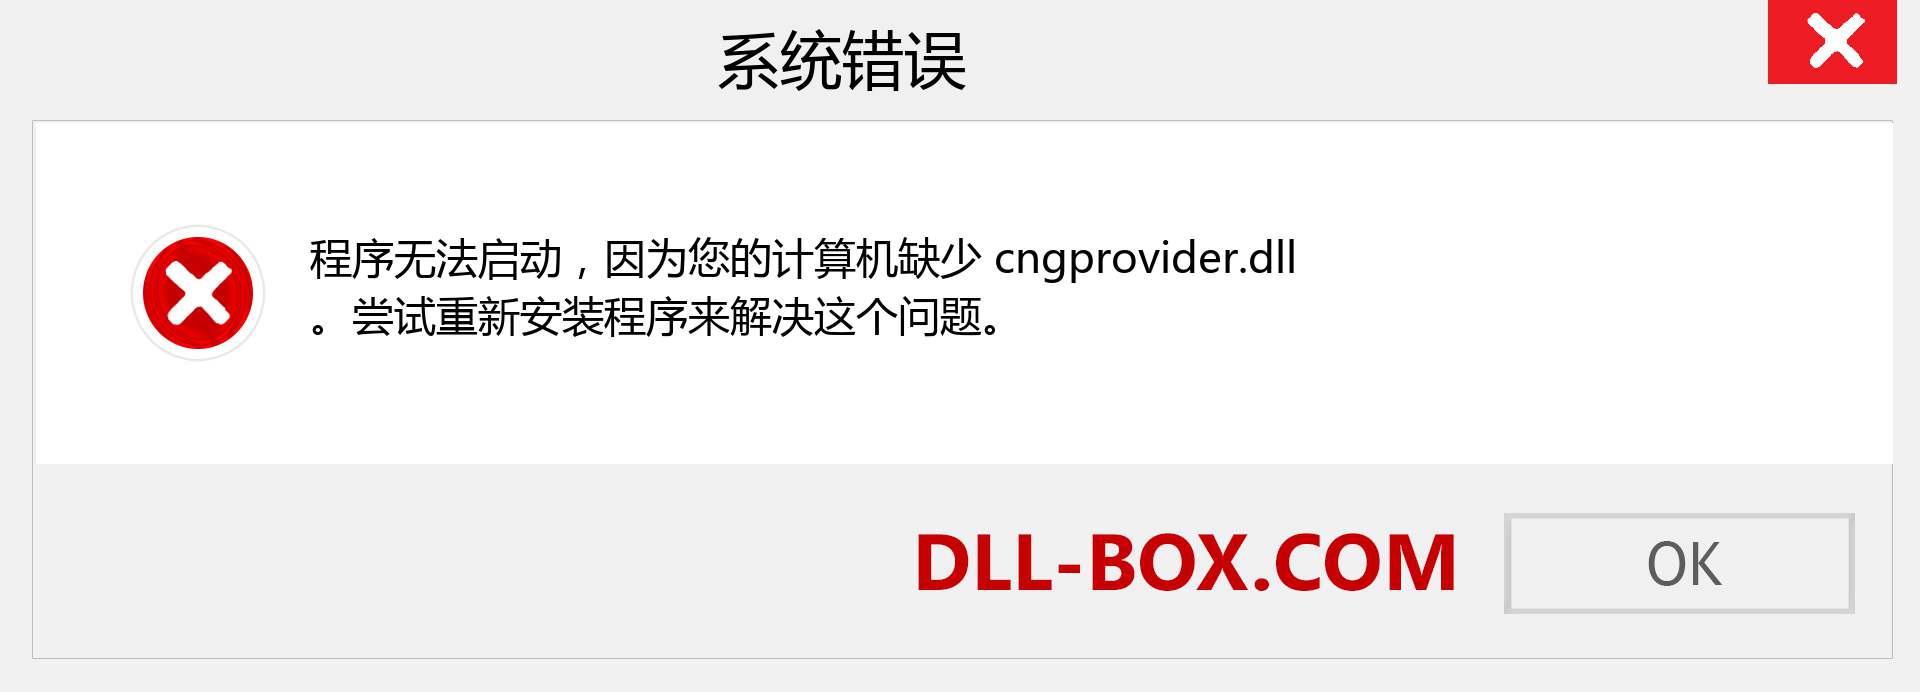 cngprovider.dll 文件丢失？。 适用于 Windows 7、8、10 的下载 - 修复 Windows、照片、图像上的 cngprovider dll 丢失错误